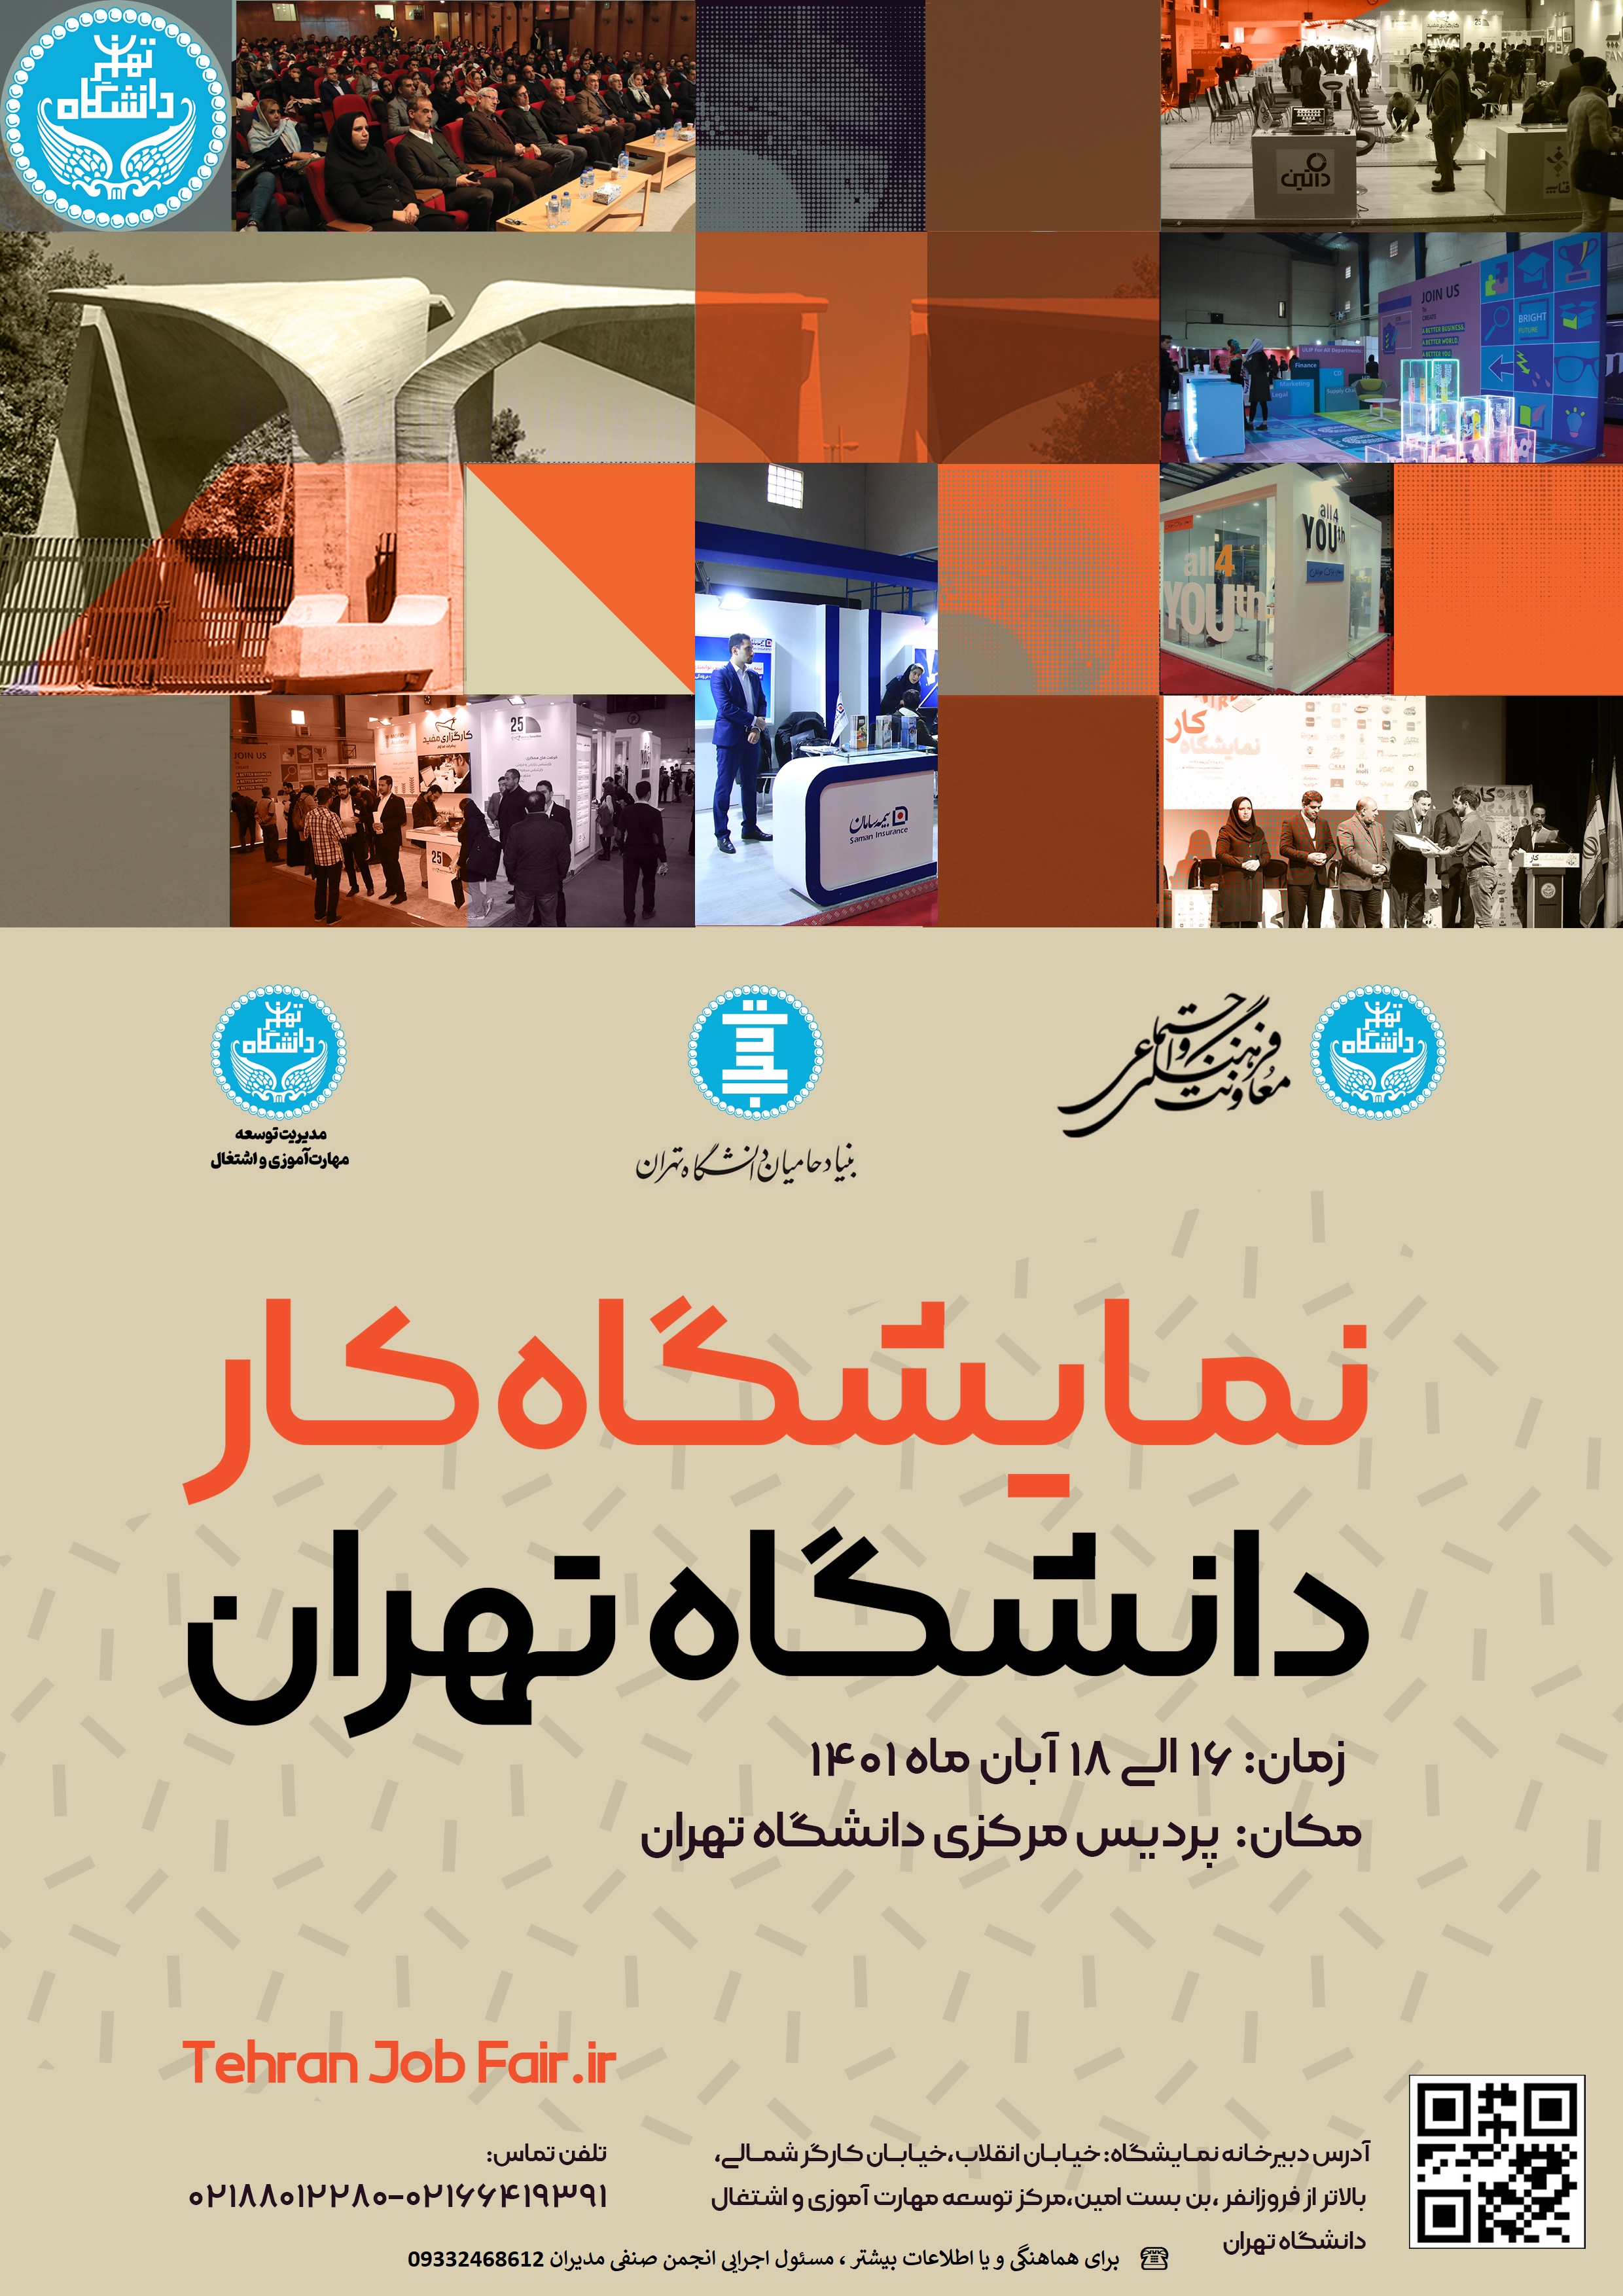 نمایشگاه کار دانشگاه تهران 